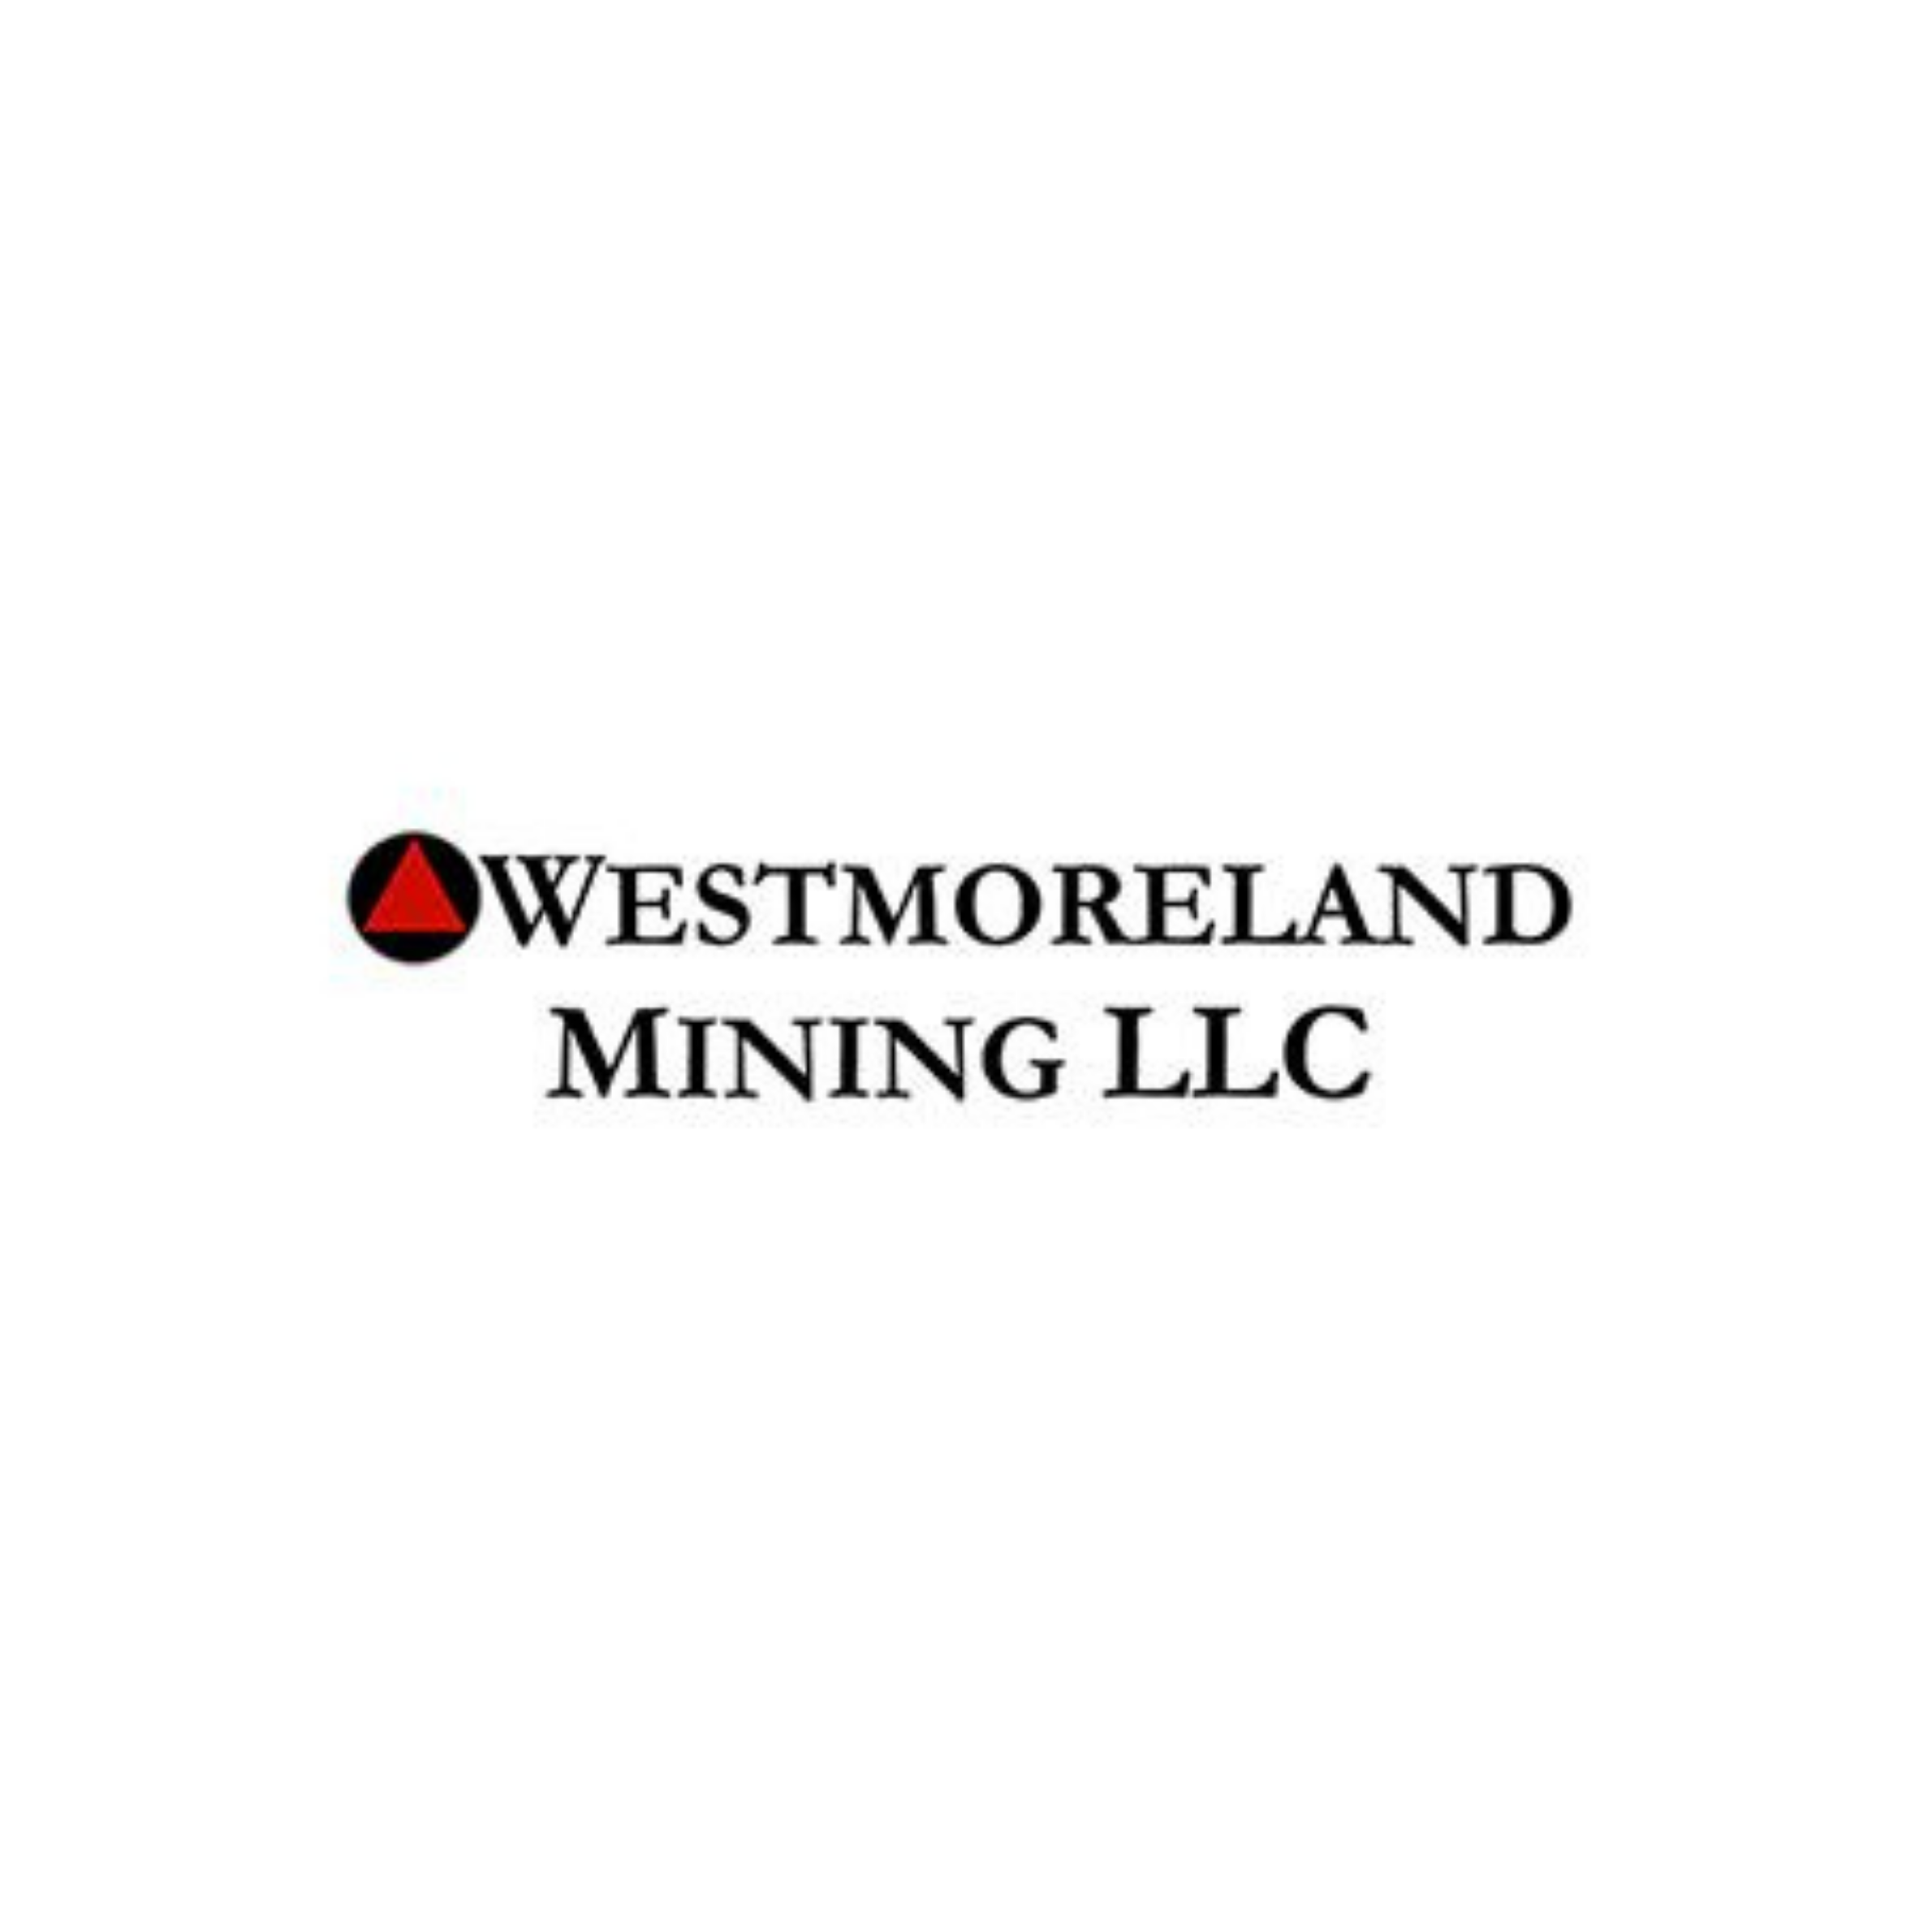 Westmoreland mining